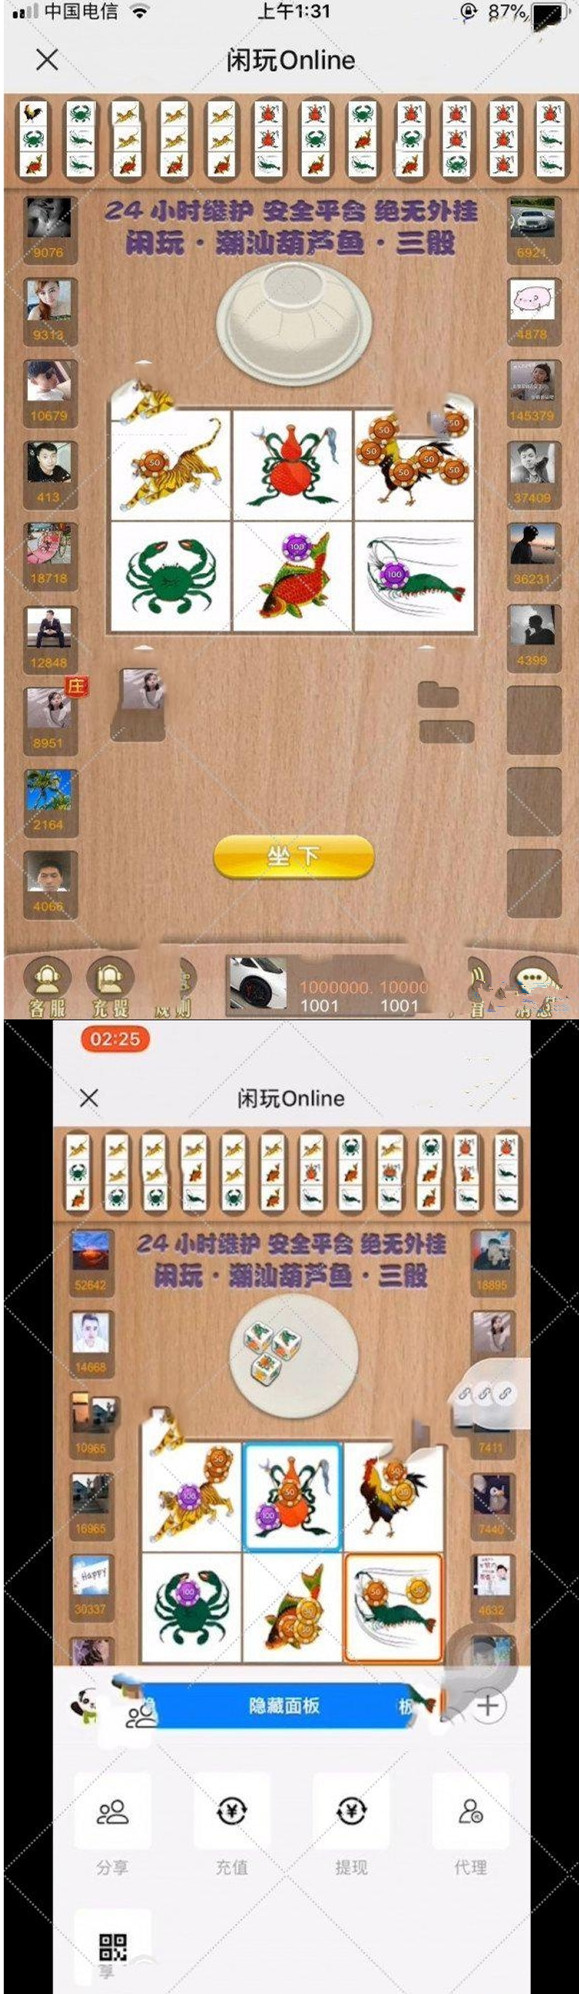 online葫芦鱼虾蟹H5闲玩游戏源码 含代理充值和控制系统